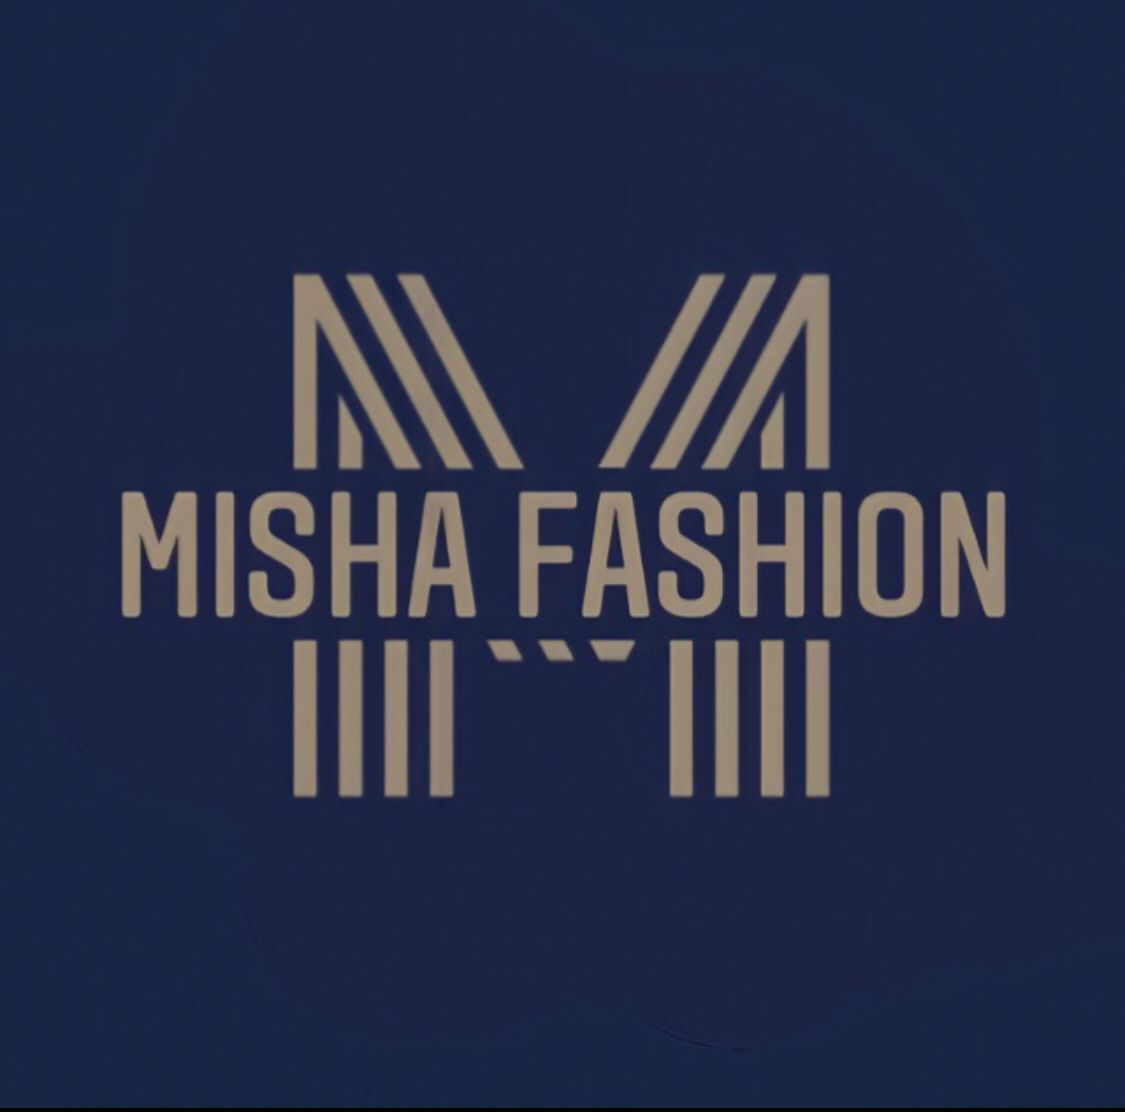 misha fashion